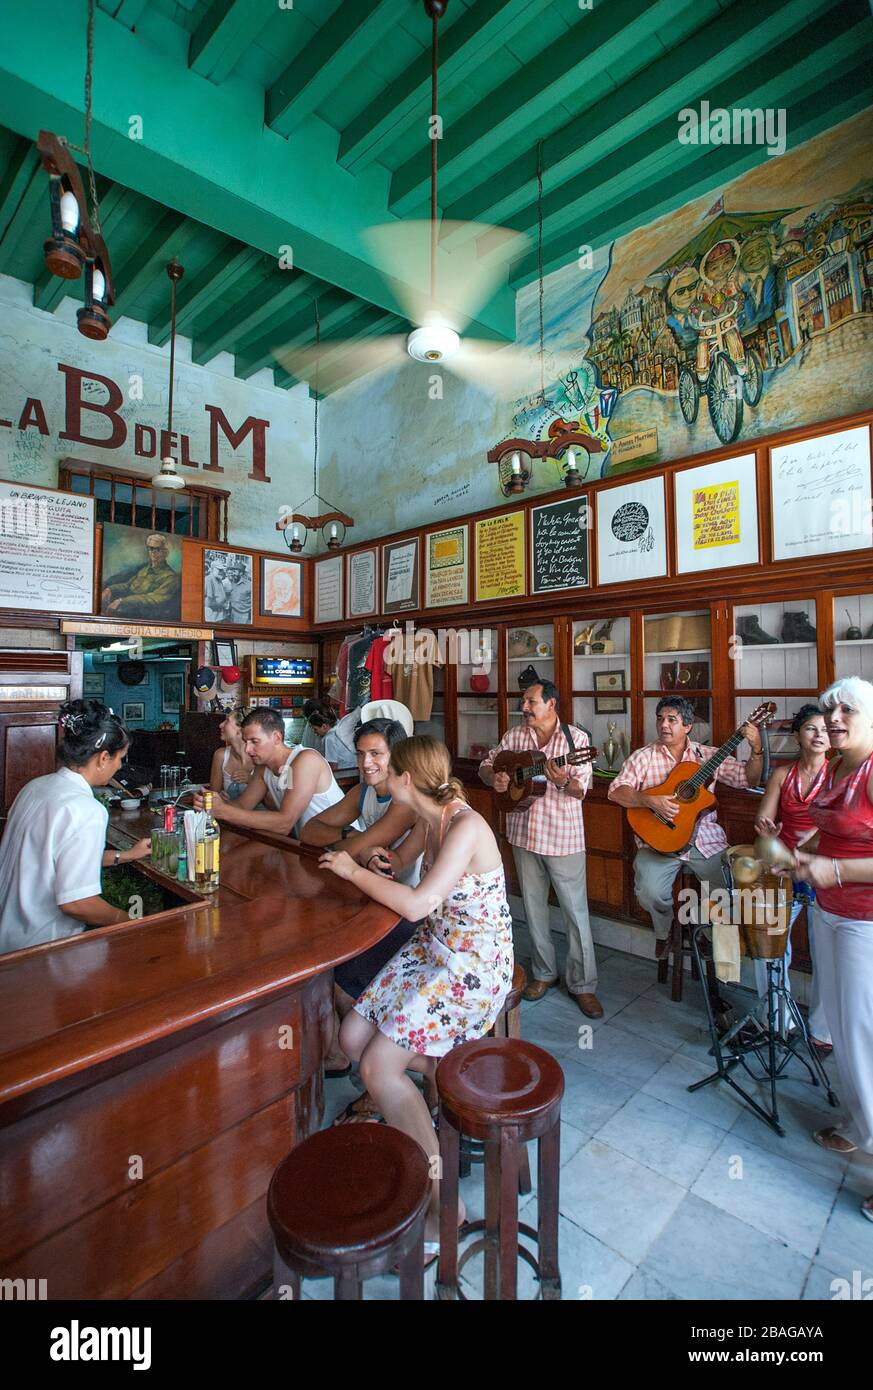 Live music in La Bodeguita del Medio, Havana, Cuba Stock Photo